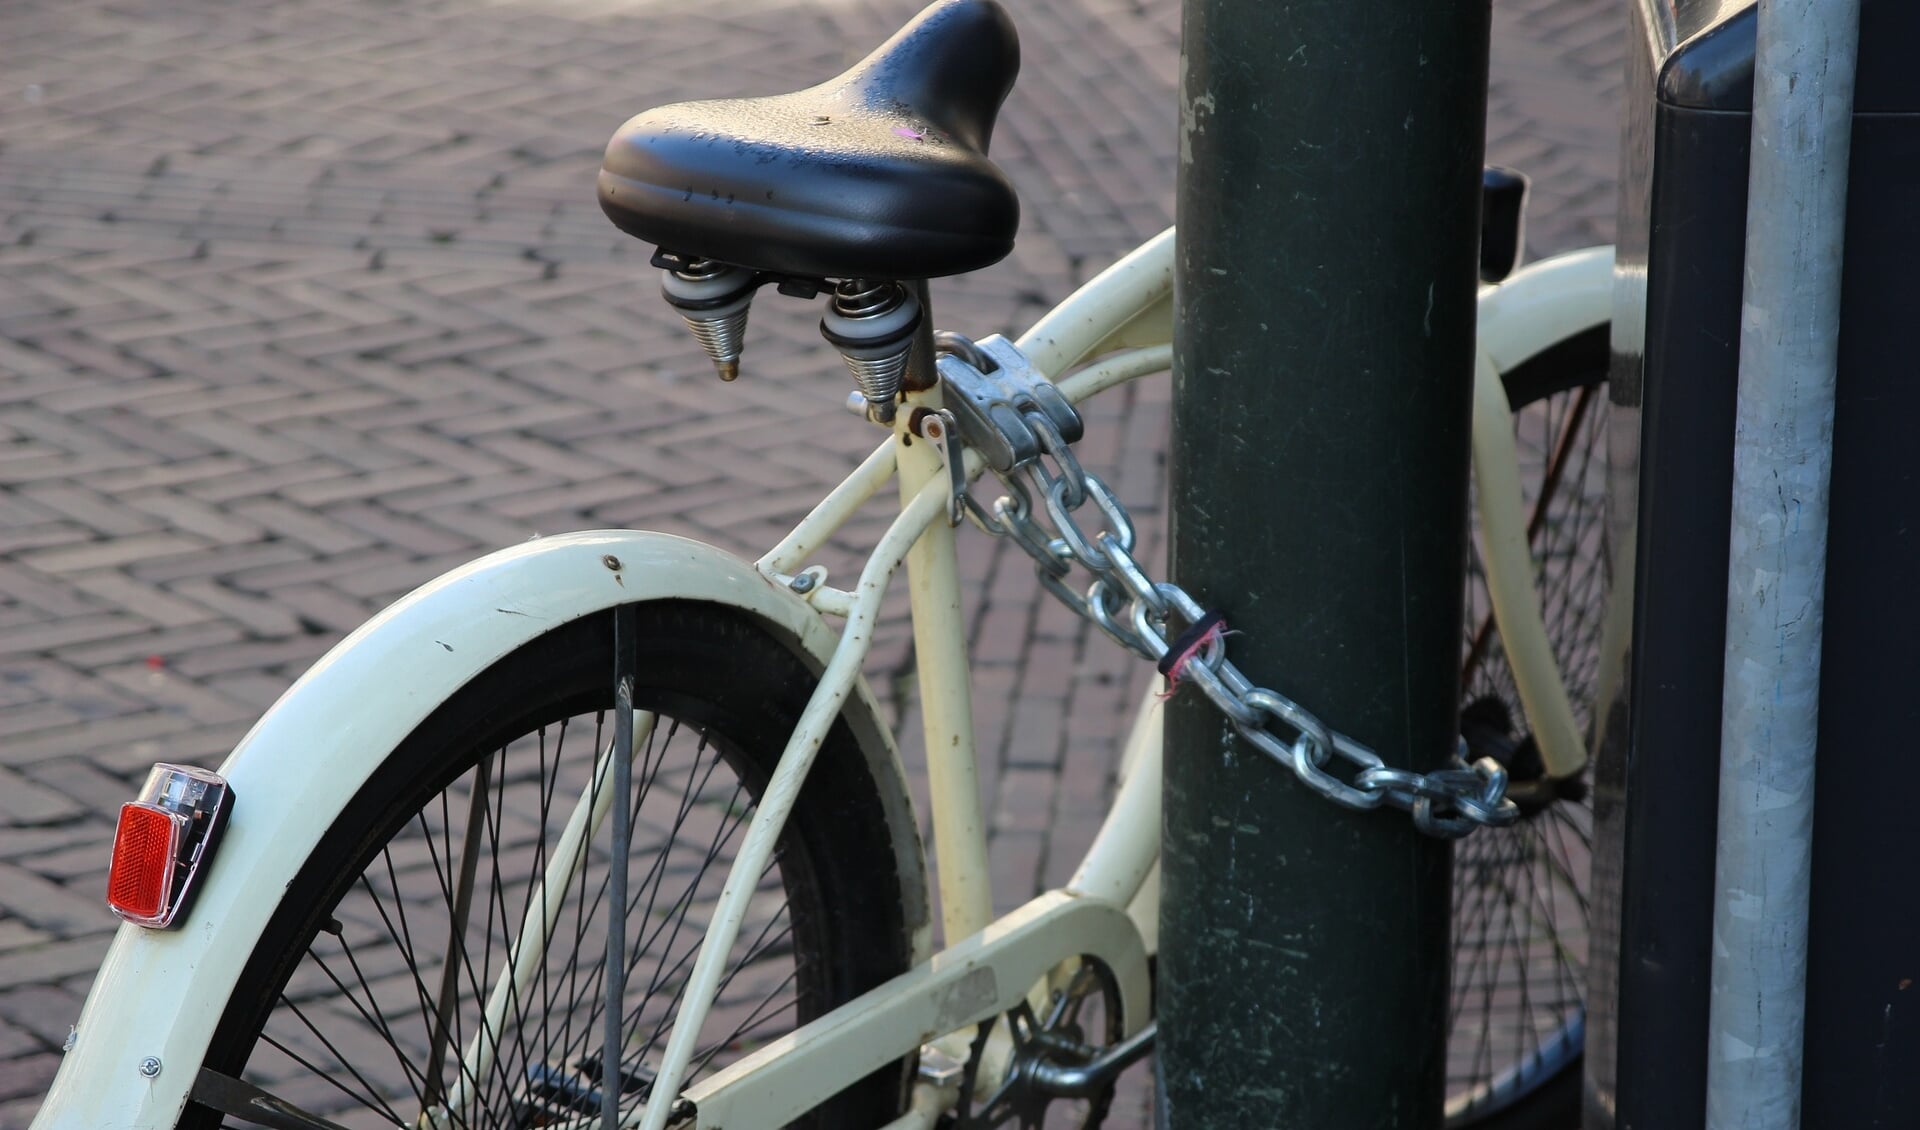 Zet je fiets liefst met twee sloten op slot.